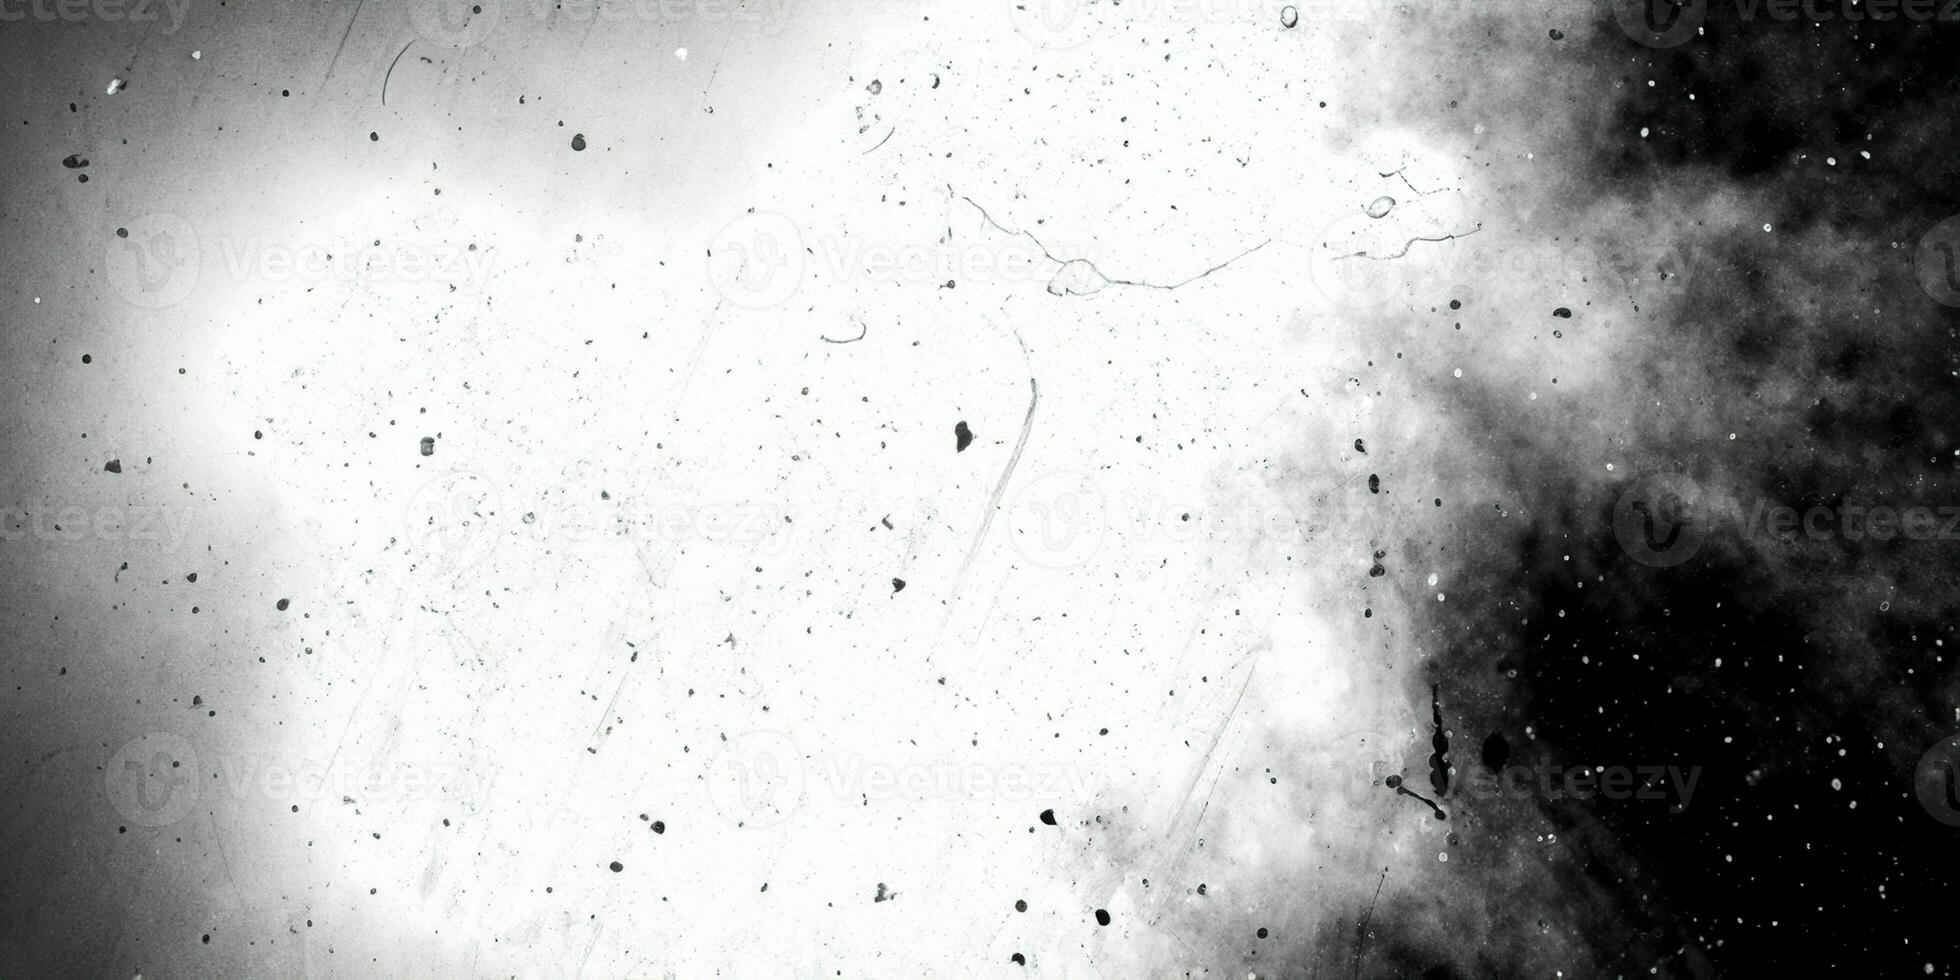 sucio monocromo cubrir pantalla efecto utilizar para grunge antecedentes y Clásico estilo. resumen polvo partícula y polvo grano textura con blanco centrar y negro fronteras foto